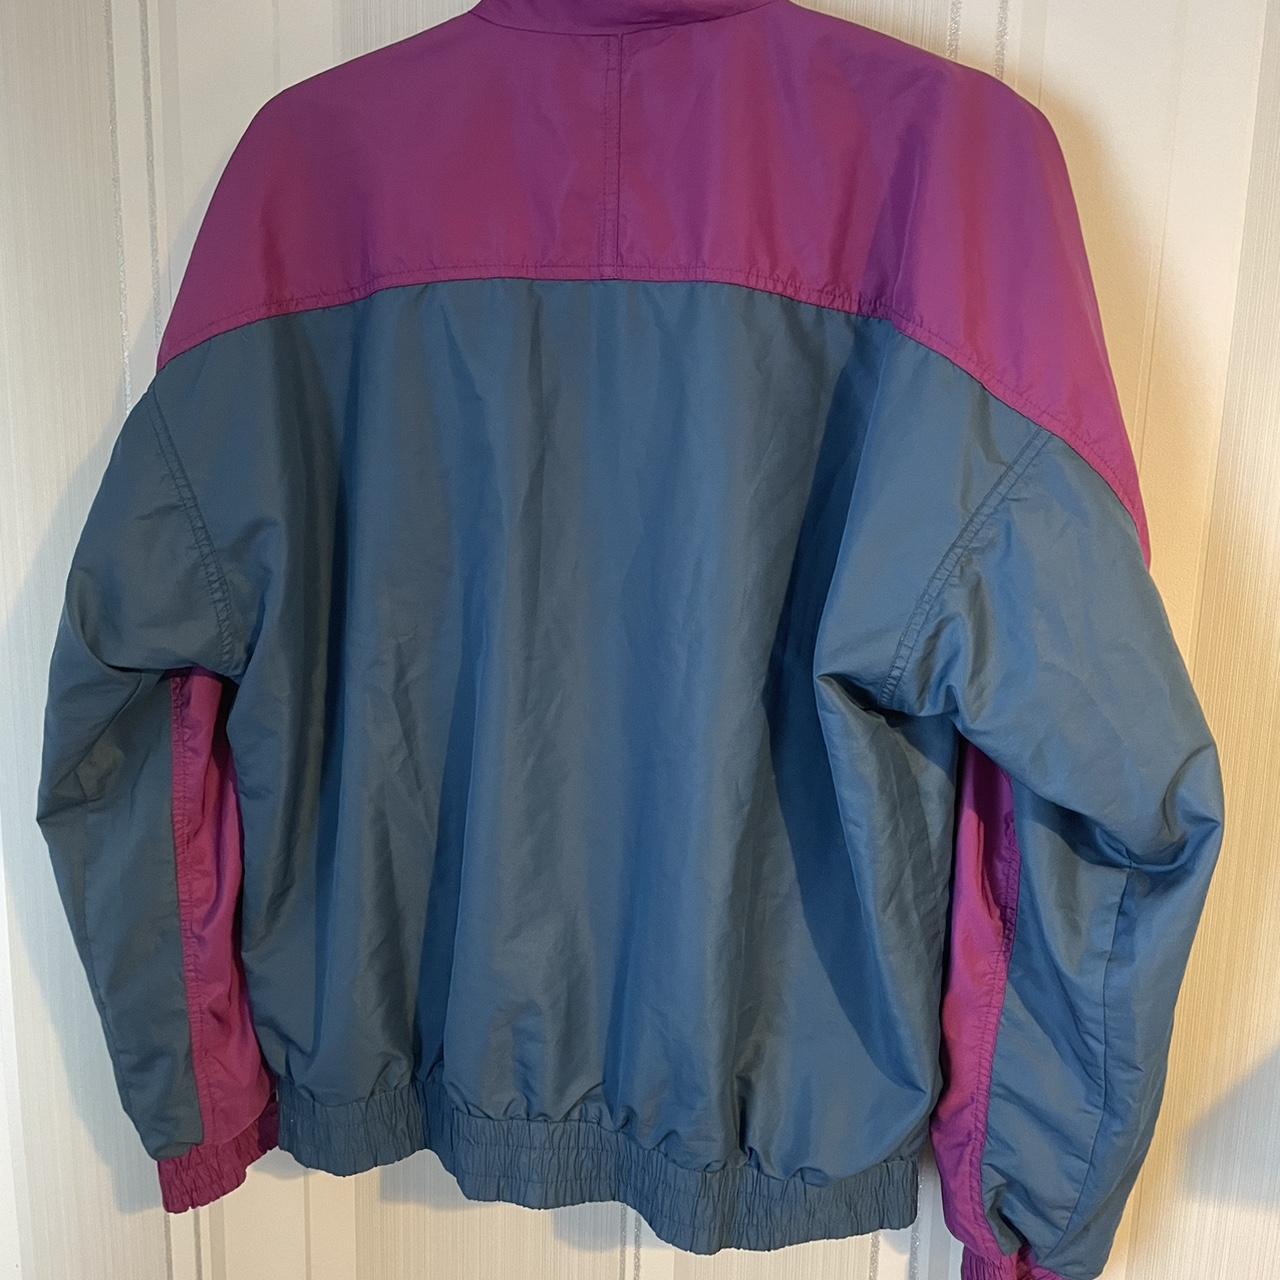 Vintage Puma 90s windbreaker track jacket purple... - Depop